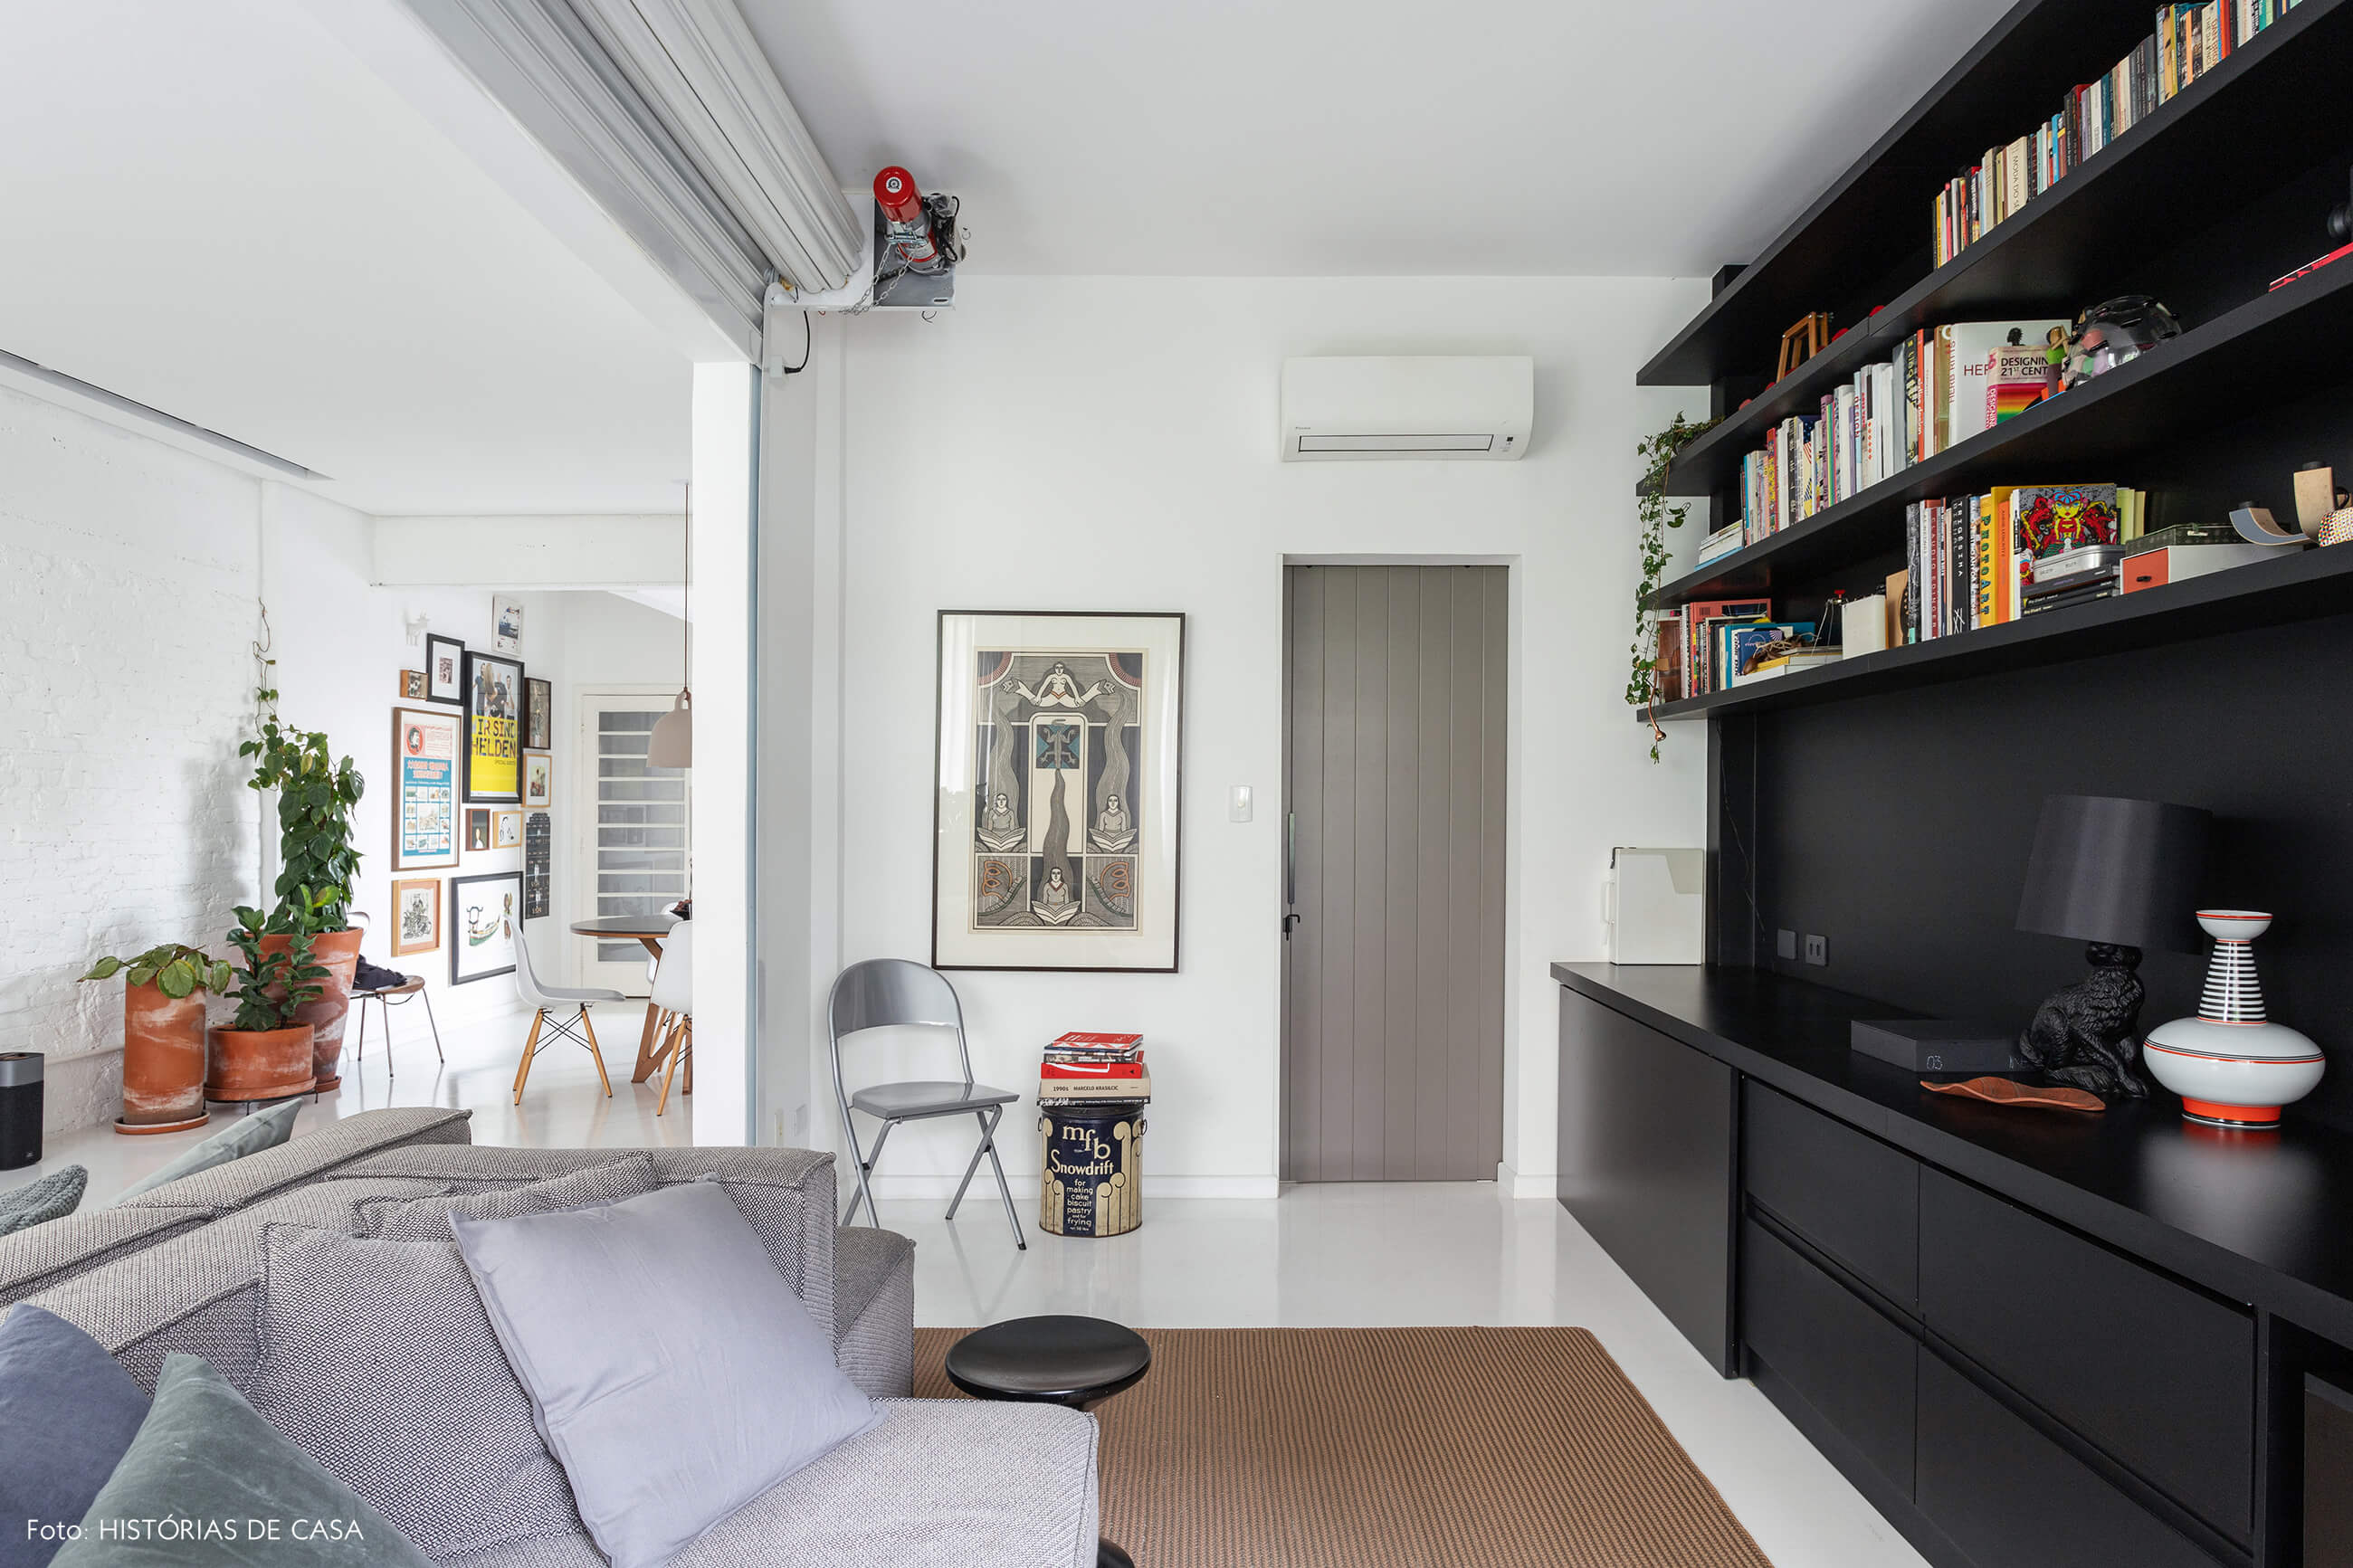 Apartamento escandinavo, sala com parede de tijolinho branco e marcenaria preta